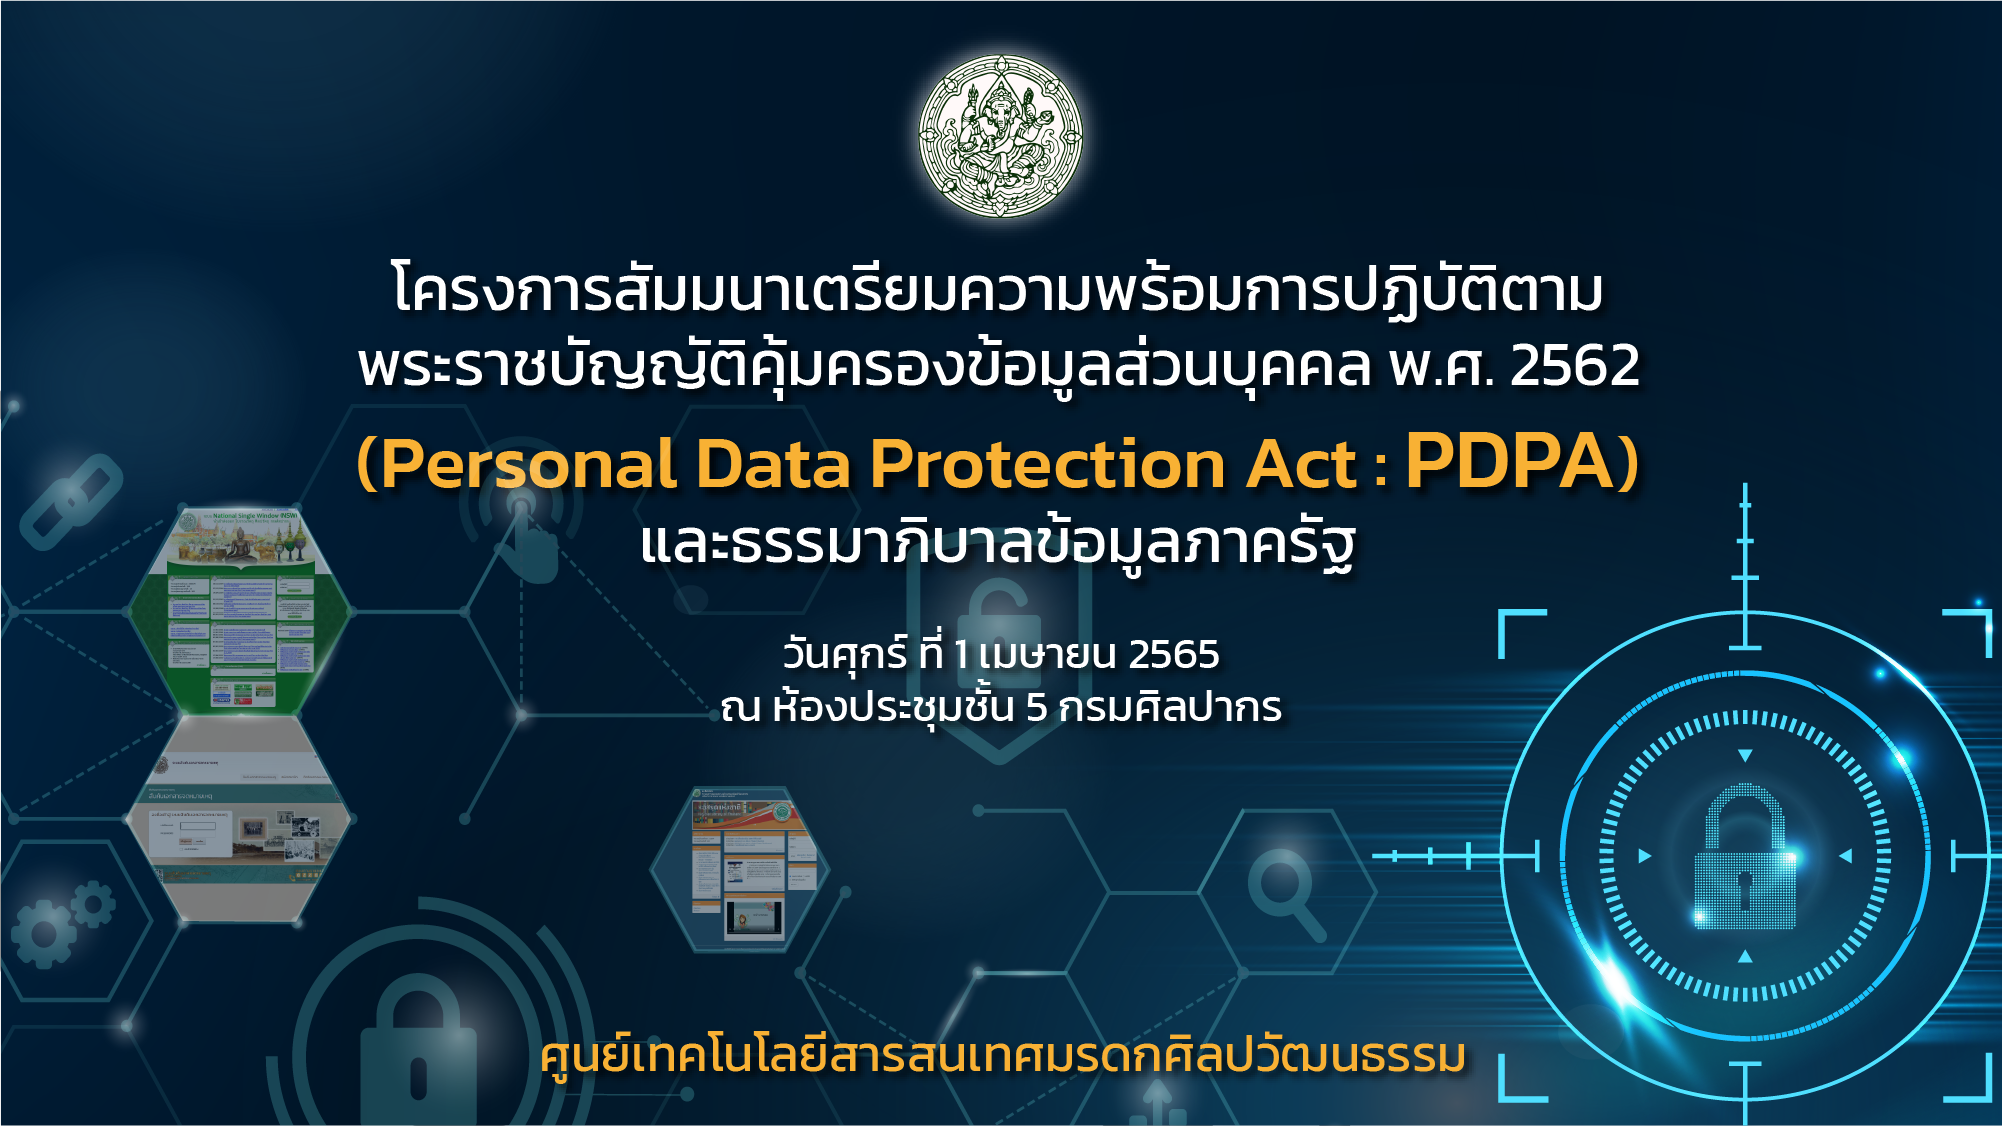 โครงการสัมมนาเตรียมความพร้อมการปฏิบัติตามพระราชบัญญัติคุ้มครองข้อมูลส่วนบุคคล พ.ศ. ๒๕๖๒ (Personal Data Protection Act : PDPA)